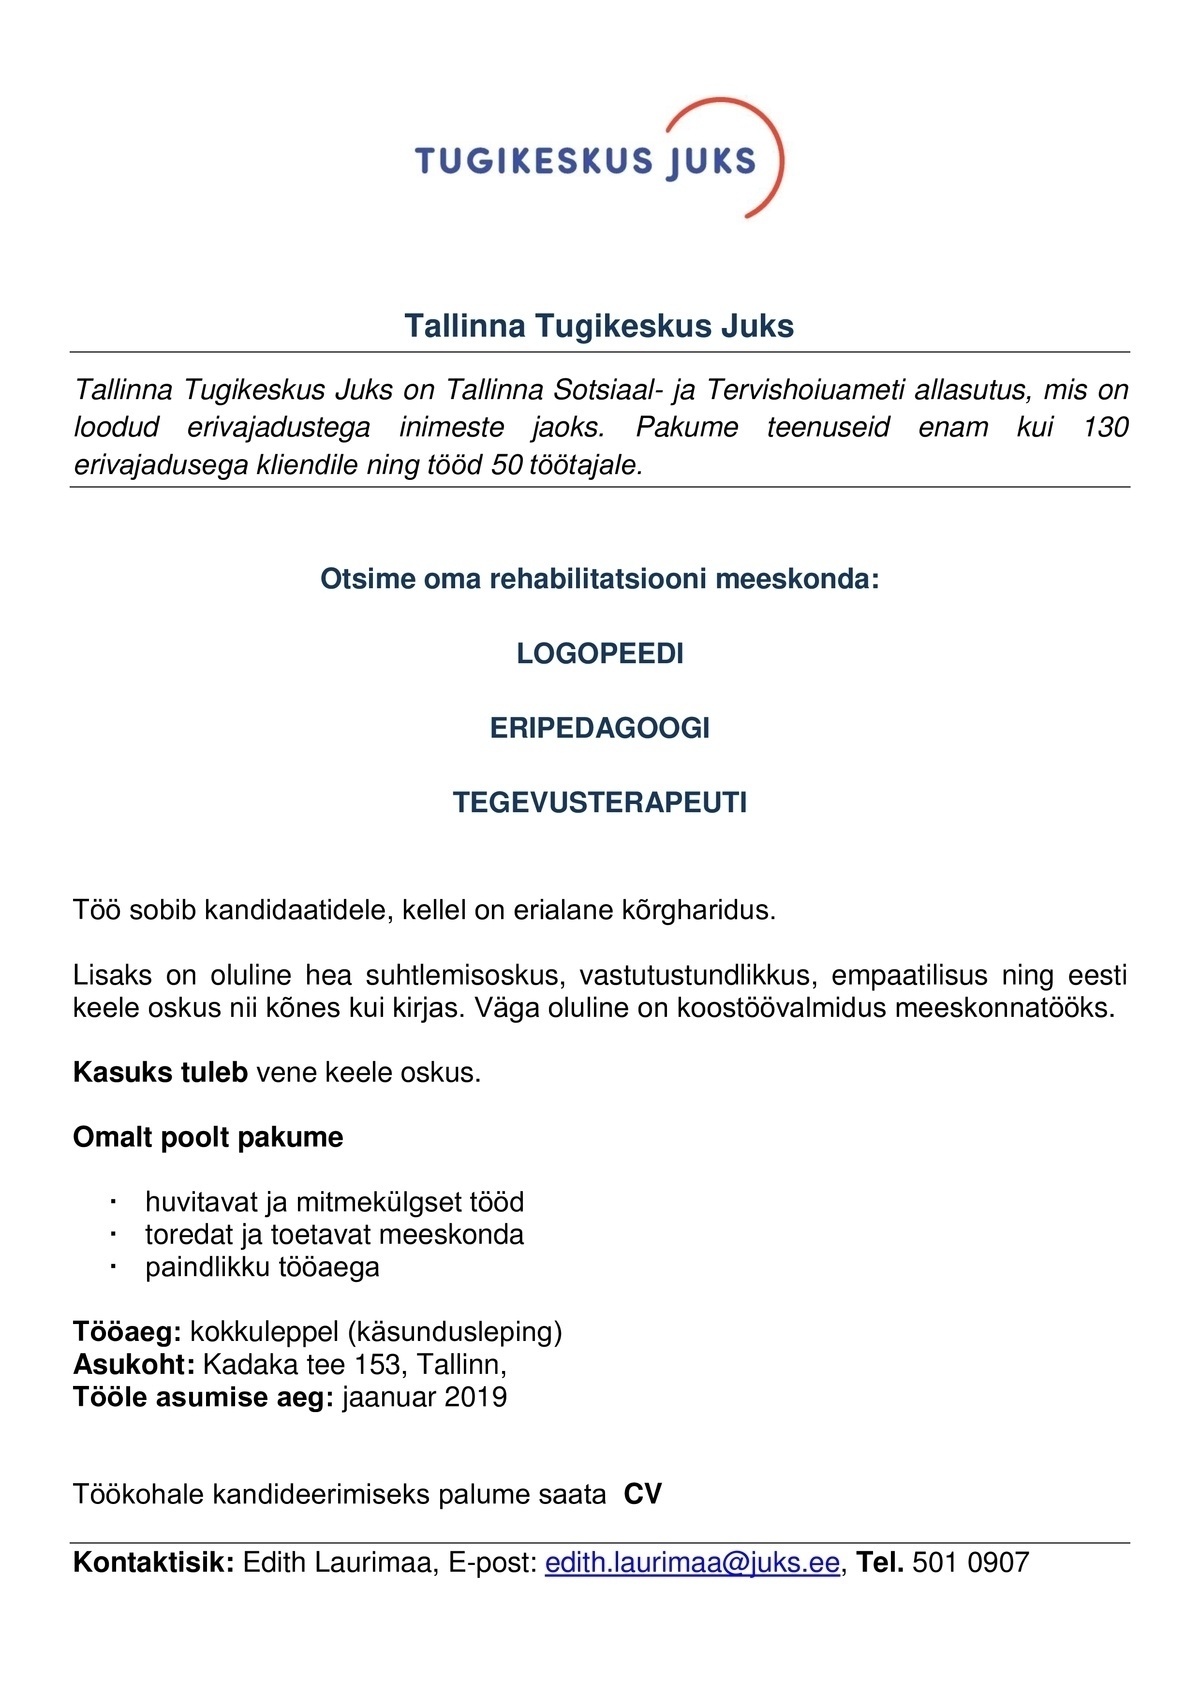 TALLINNA TUGIKESKUS JUKS Logopeed, eripedagoog, tegevusterapeut